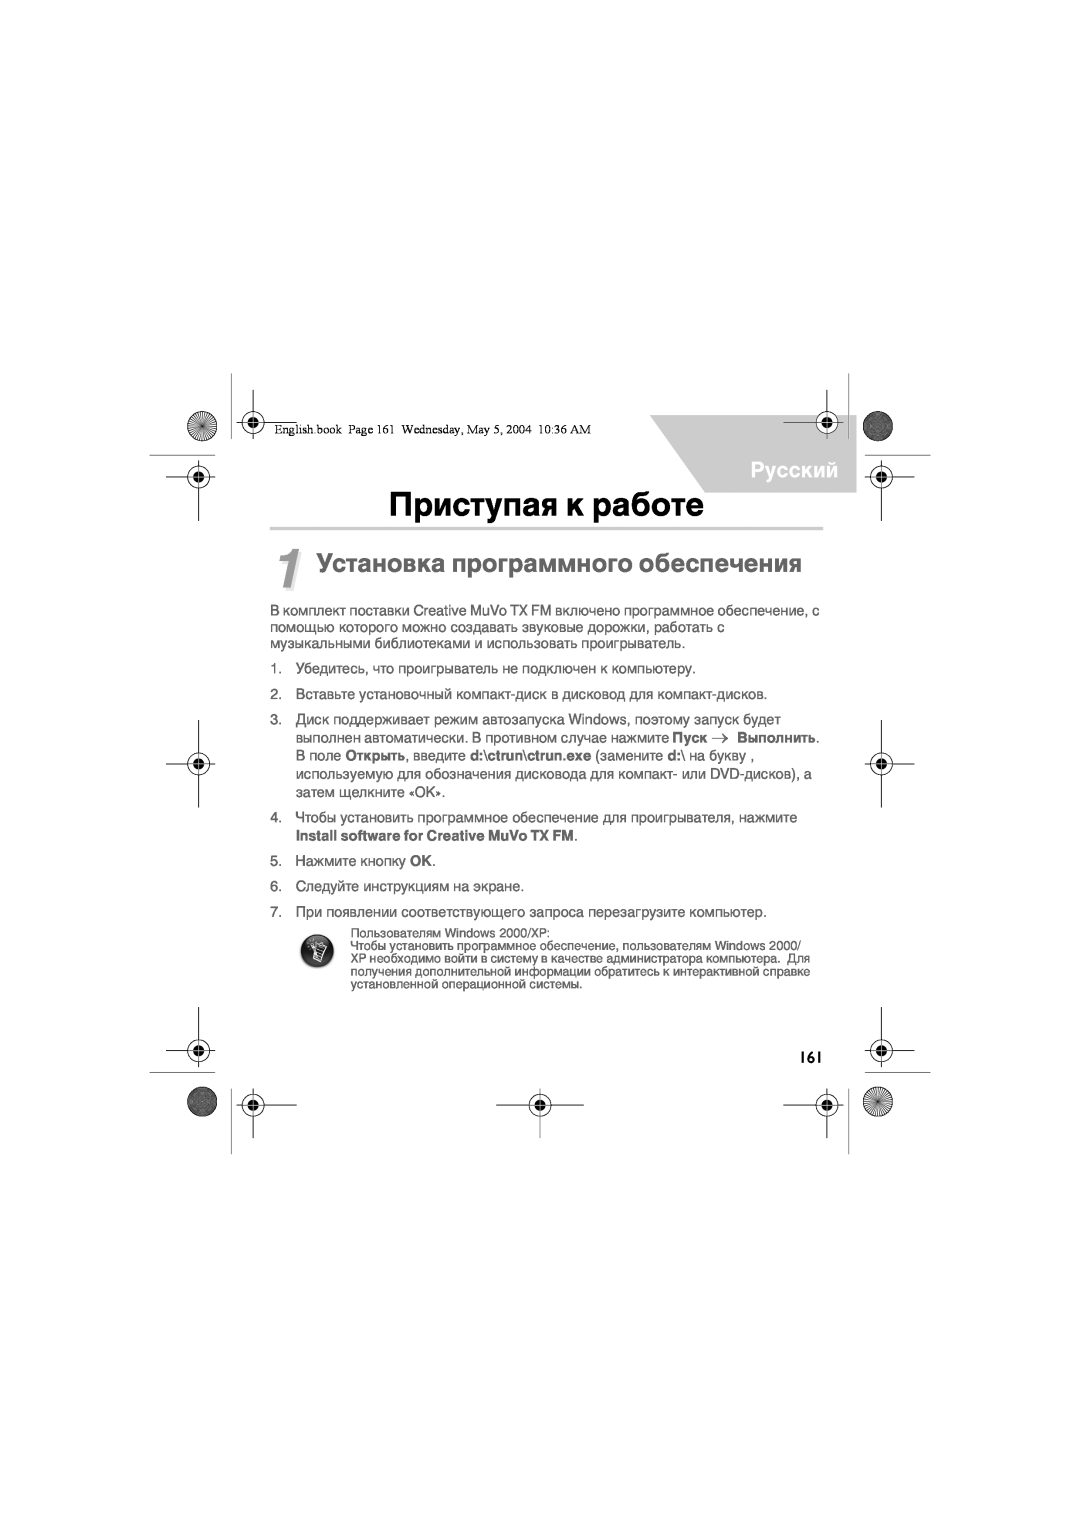 Musica CD Player manual Приступая к работе, 1 Установка программного обеспечения, Русский 